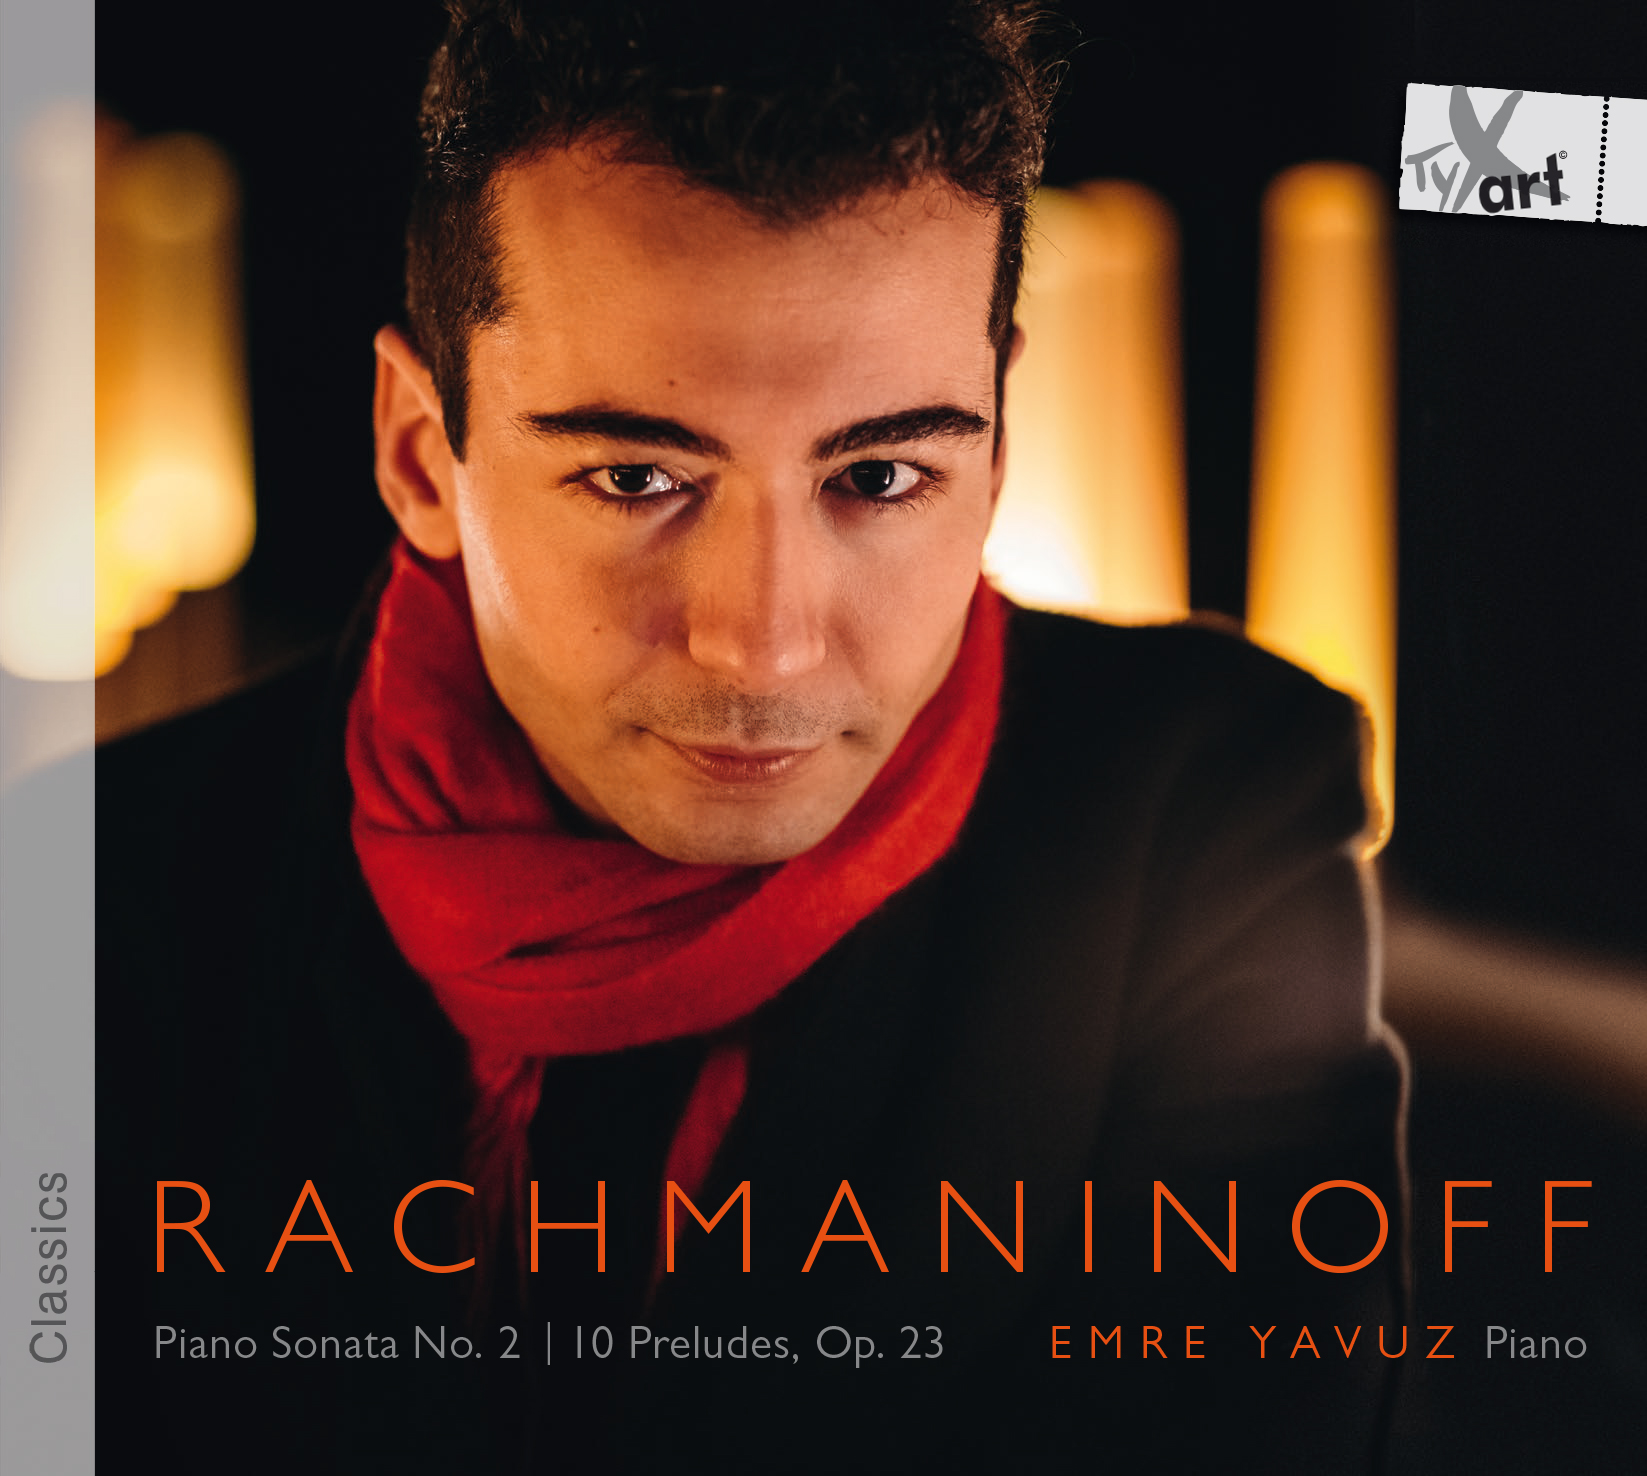 Rachmaninoff - Emre Yavuz, Klavier